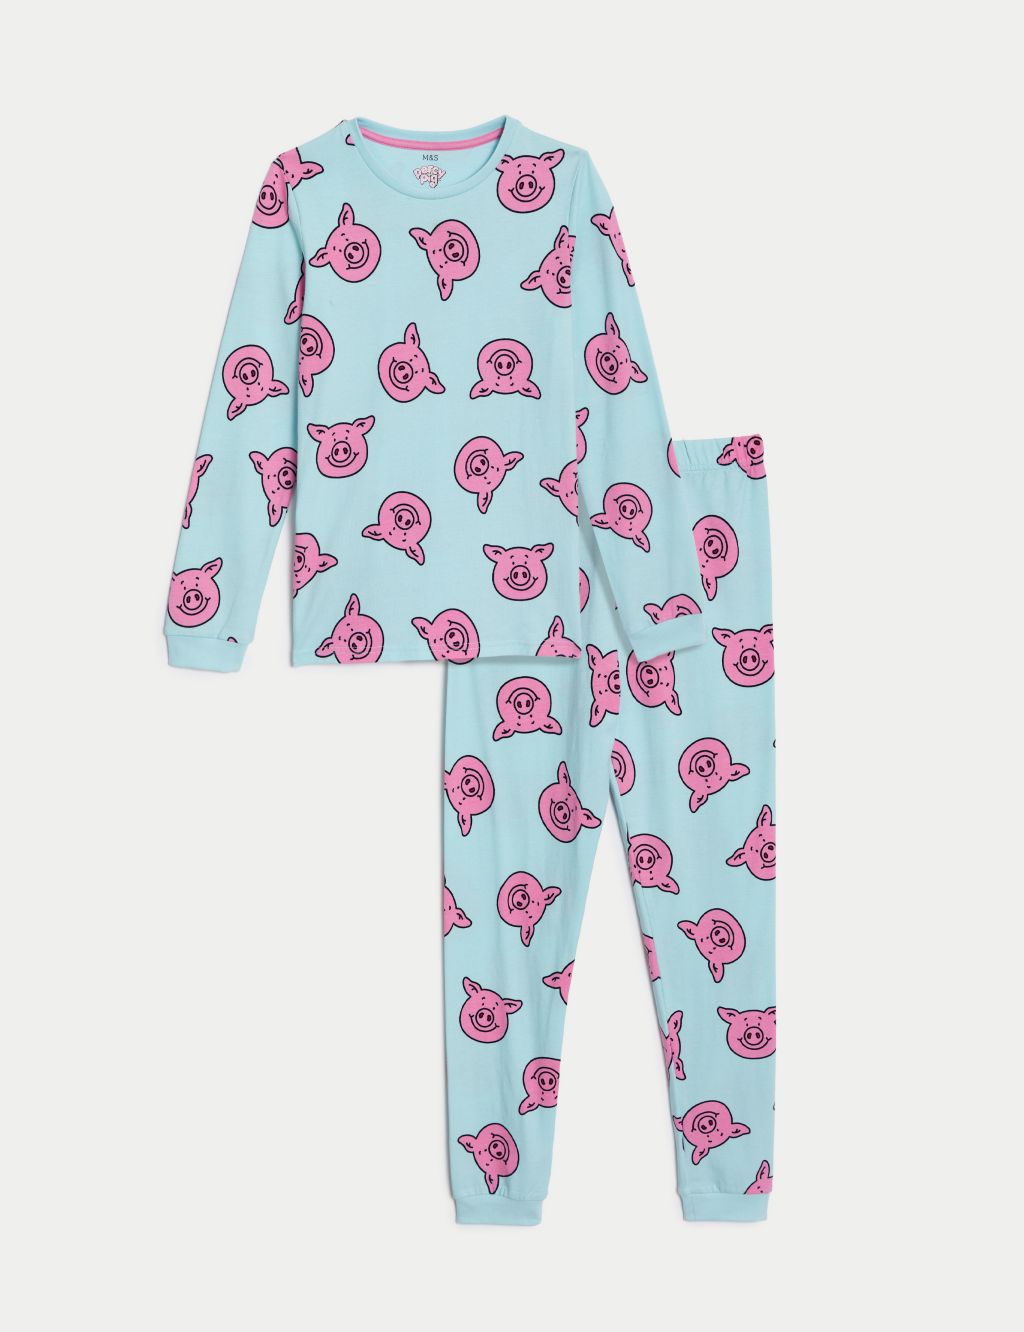 Percy Pig™ Pyjamas (2-16 Yrs)